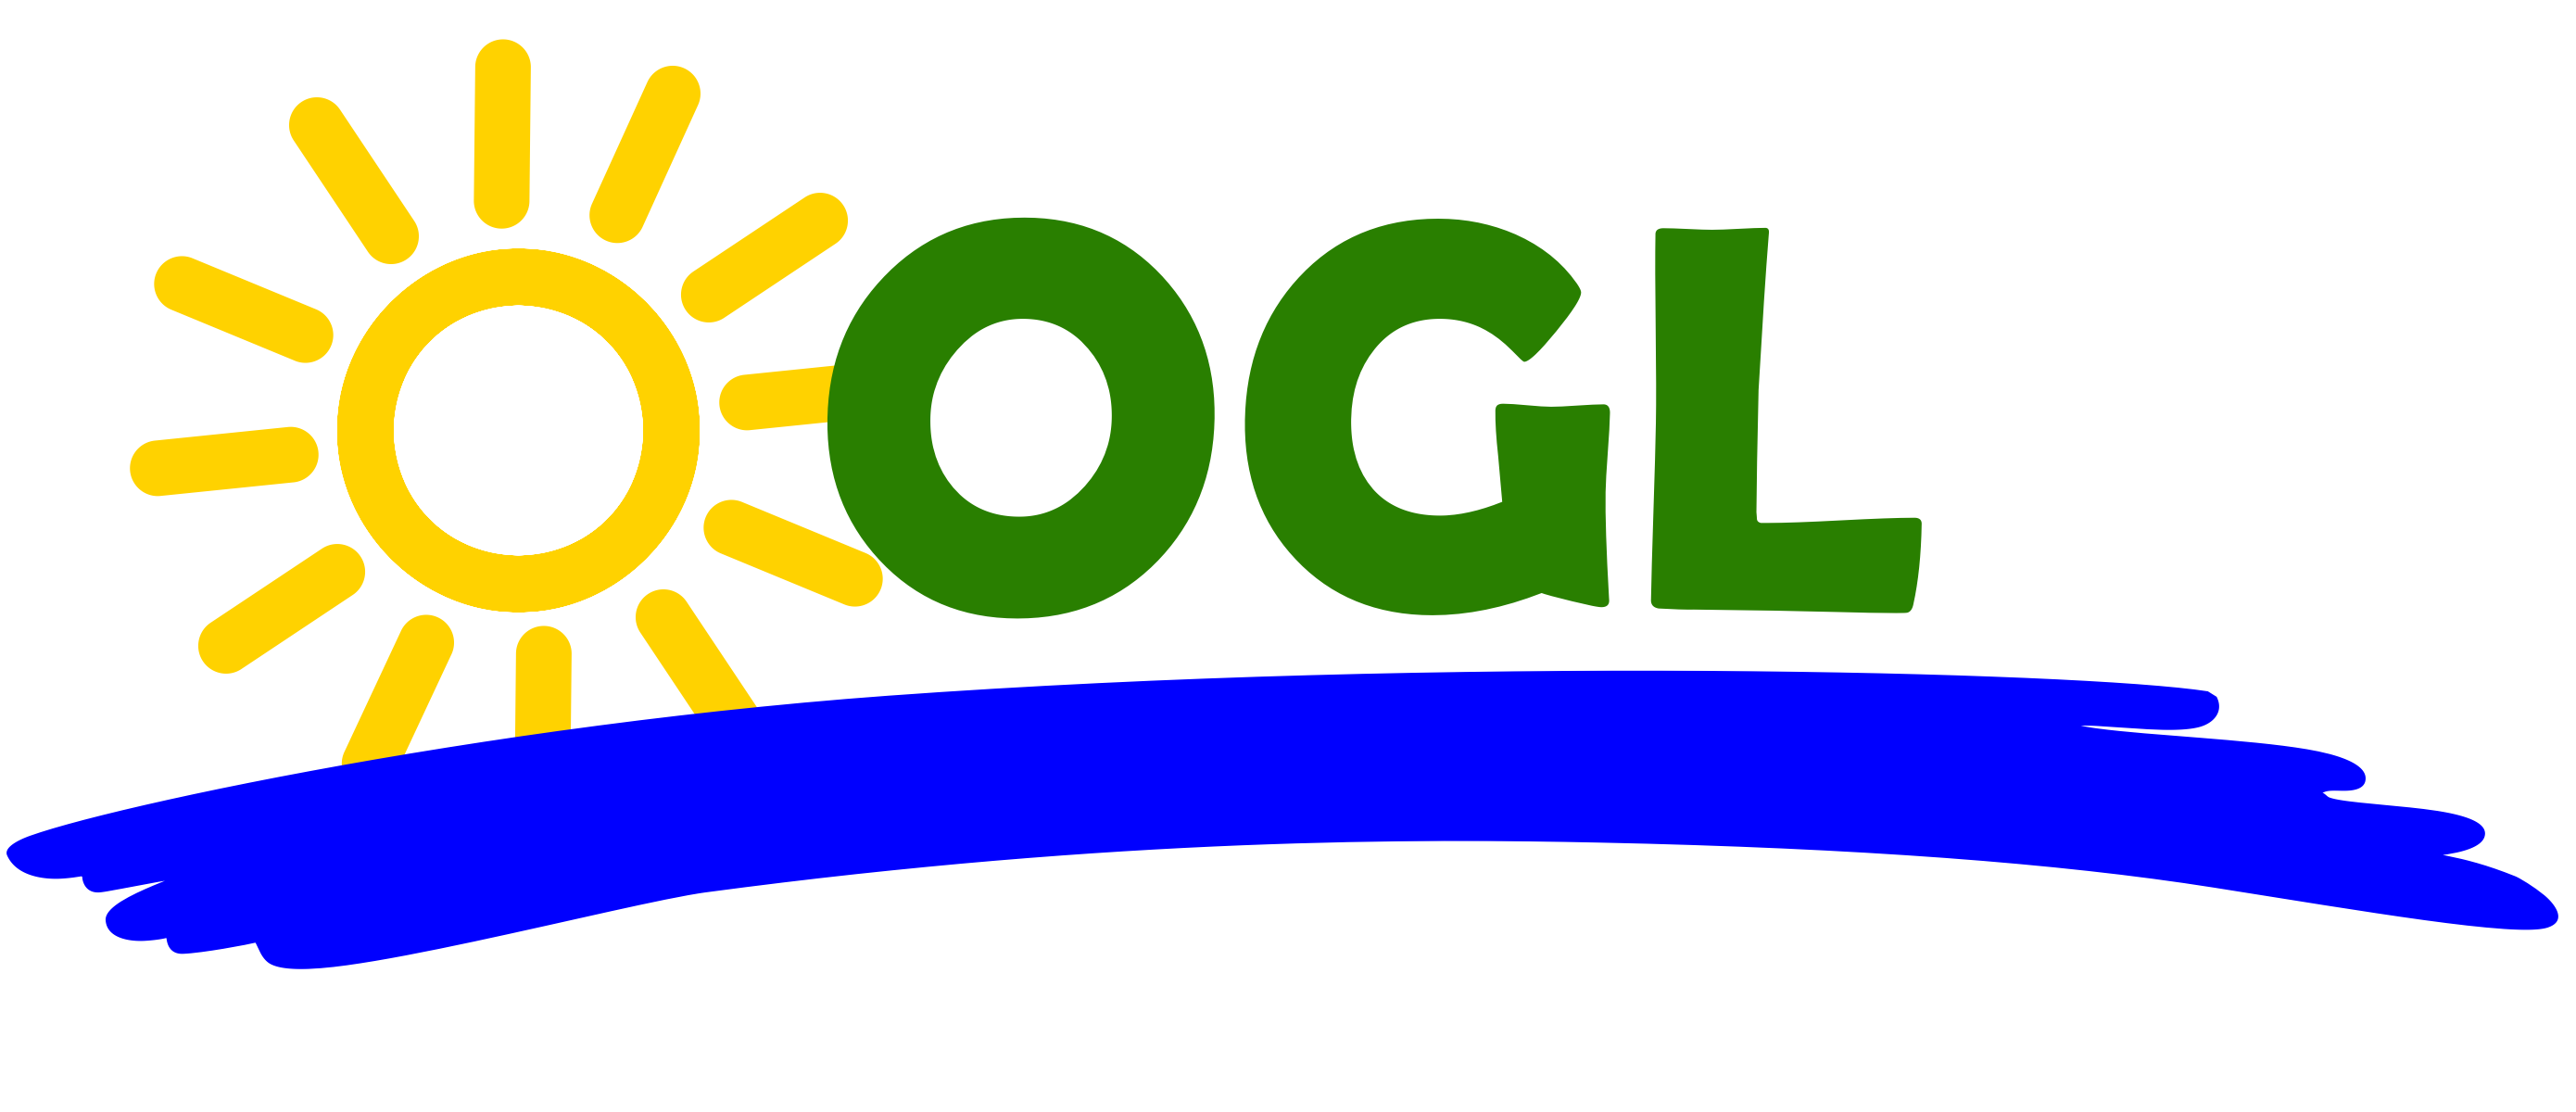 Gelbe Sonne - Buchstaben O G L in Grün - darunter ein blauer Schwung, der den Neckar symbolisiert